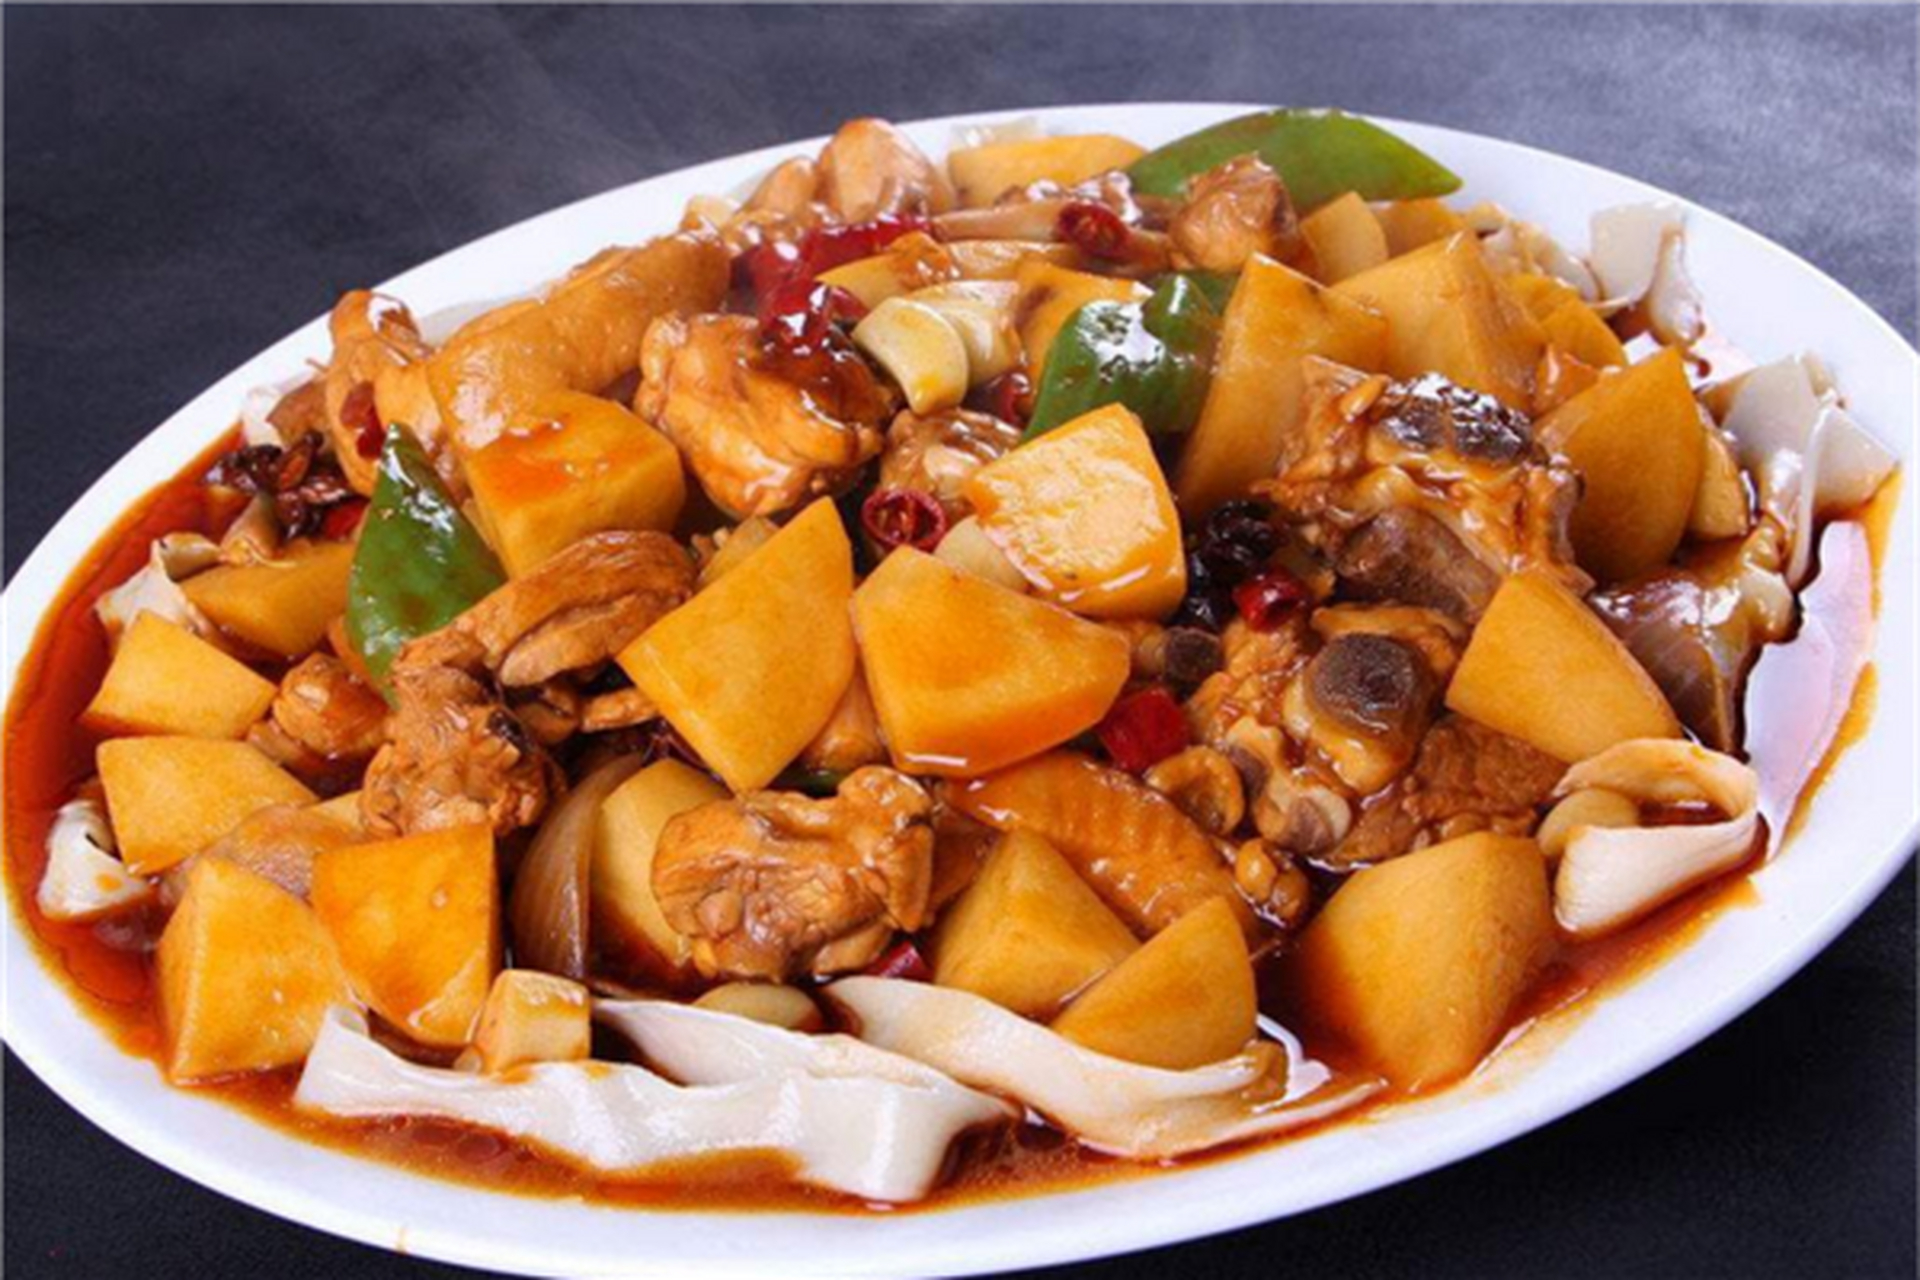 新疆十大名菜之一,大盘鸡是新疆特色美味,大盘鸡量大实惠,最关键的是